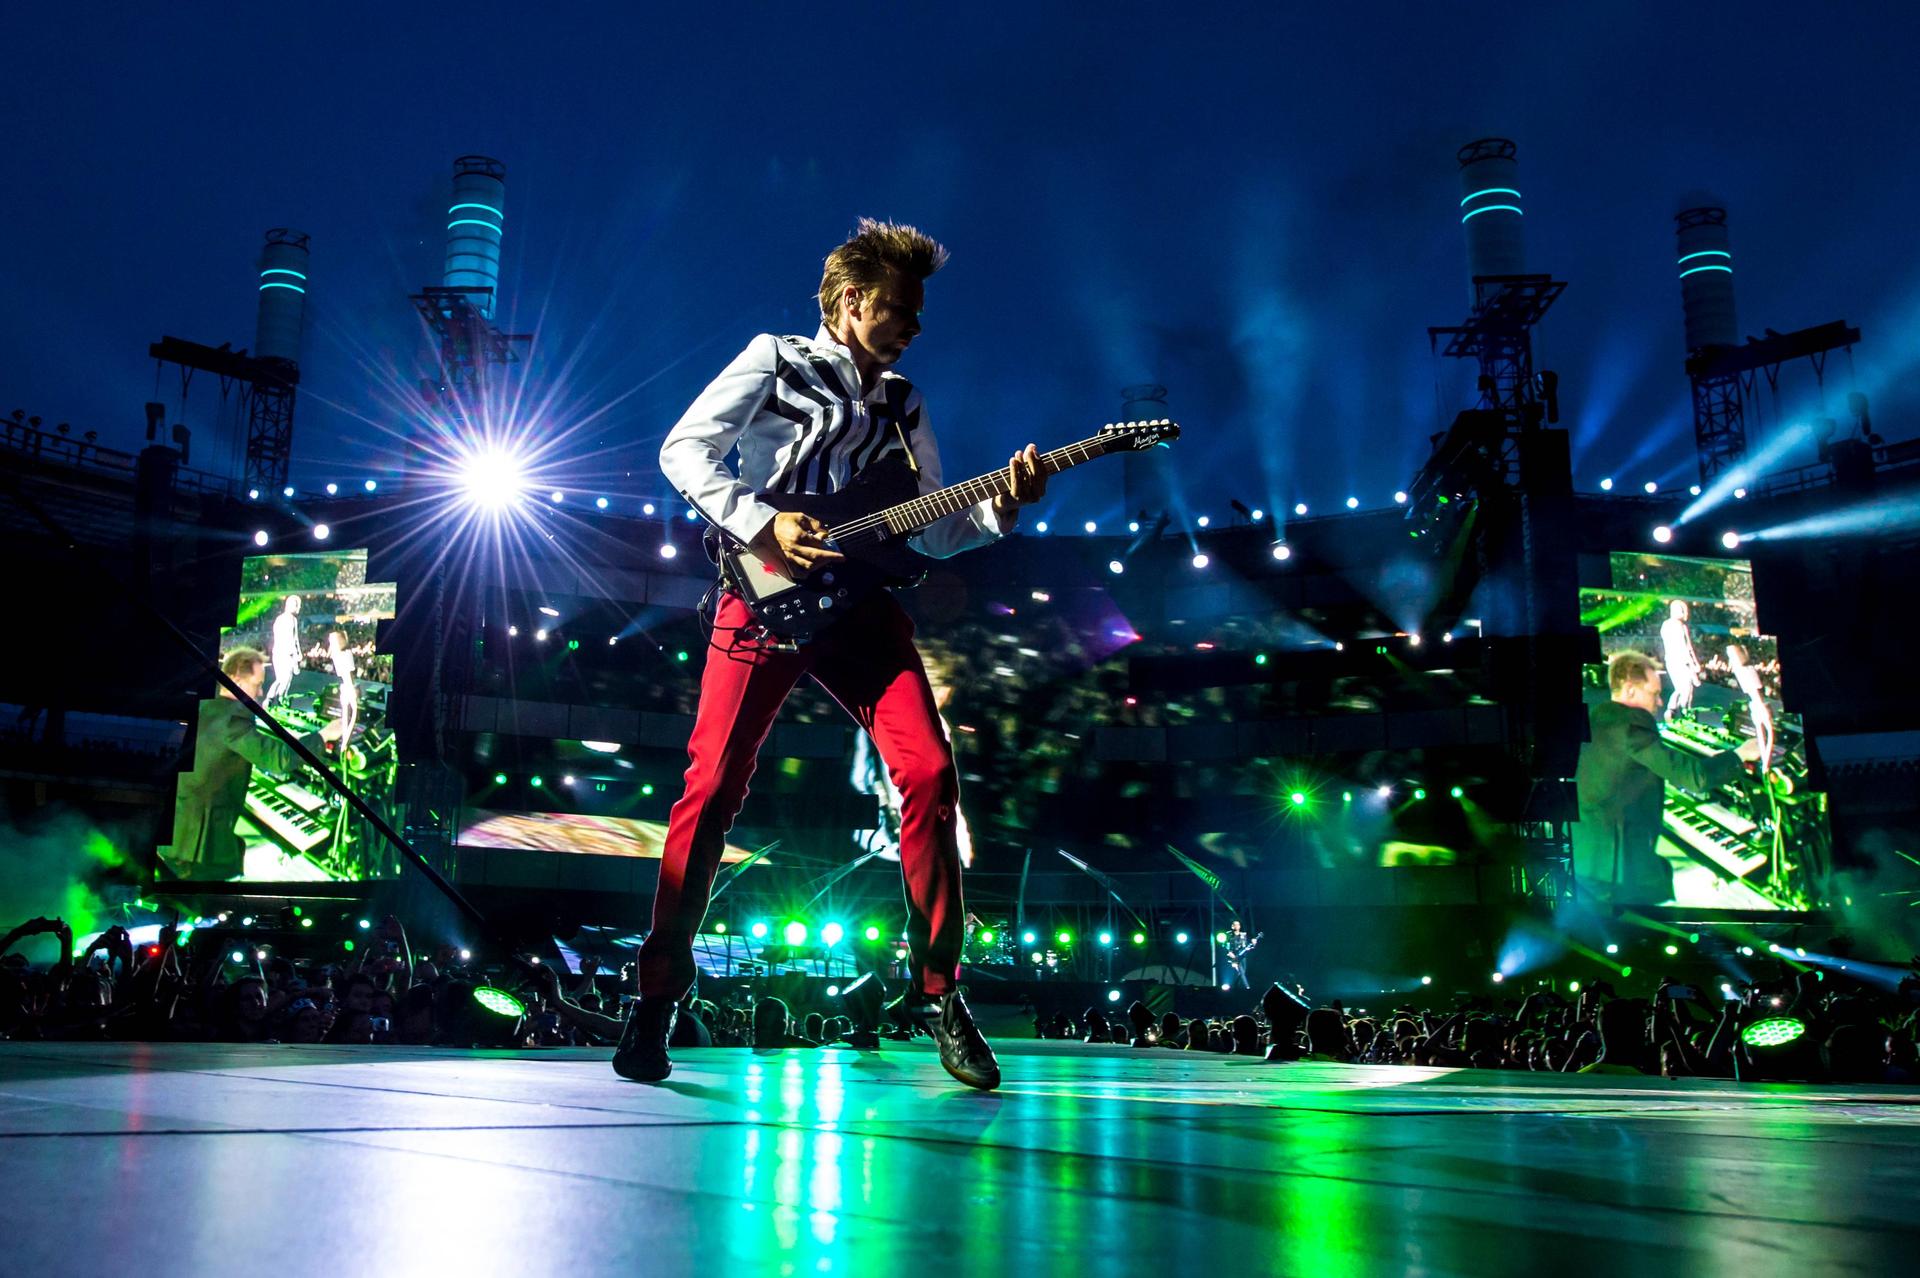 Οι Muse ανακοινώνουν παγκόσμια περιοδεία για το 2015-2016